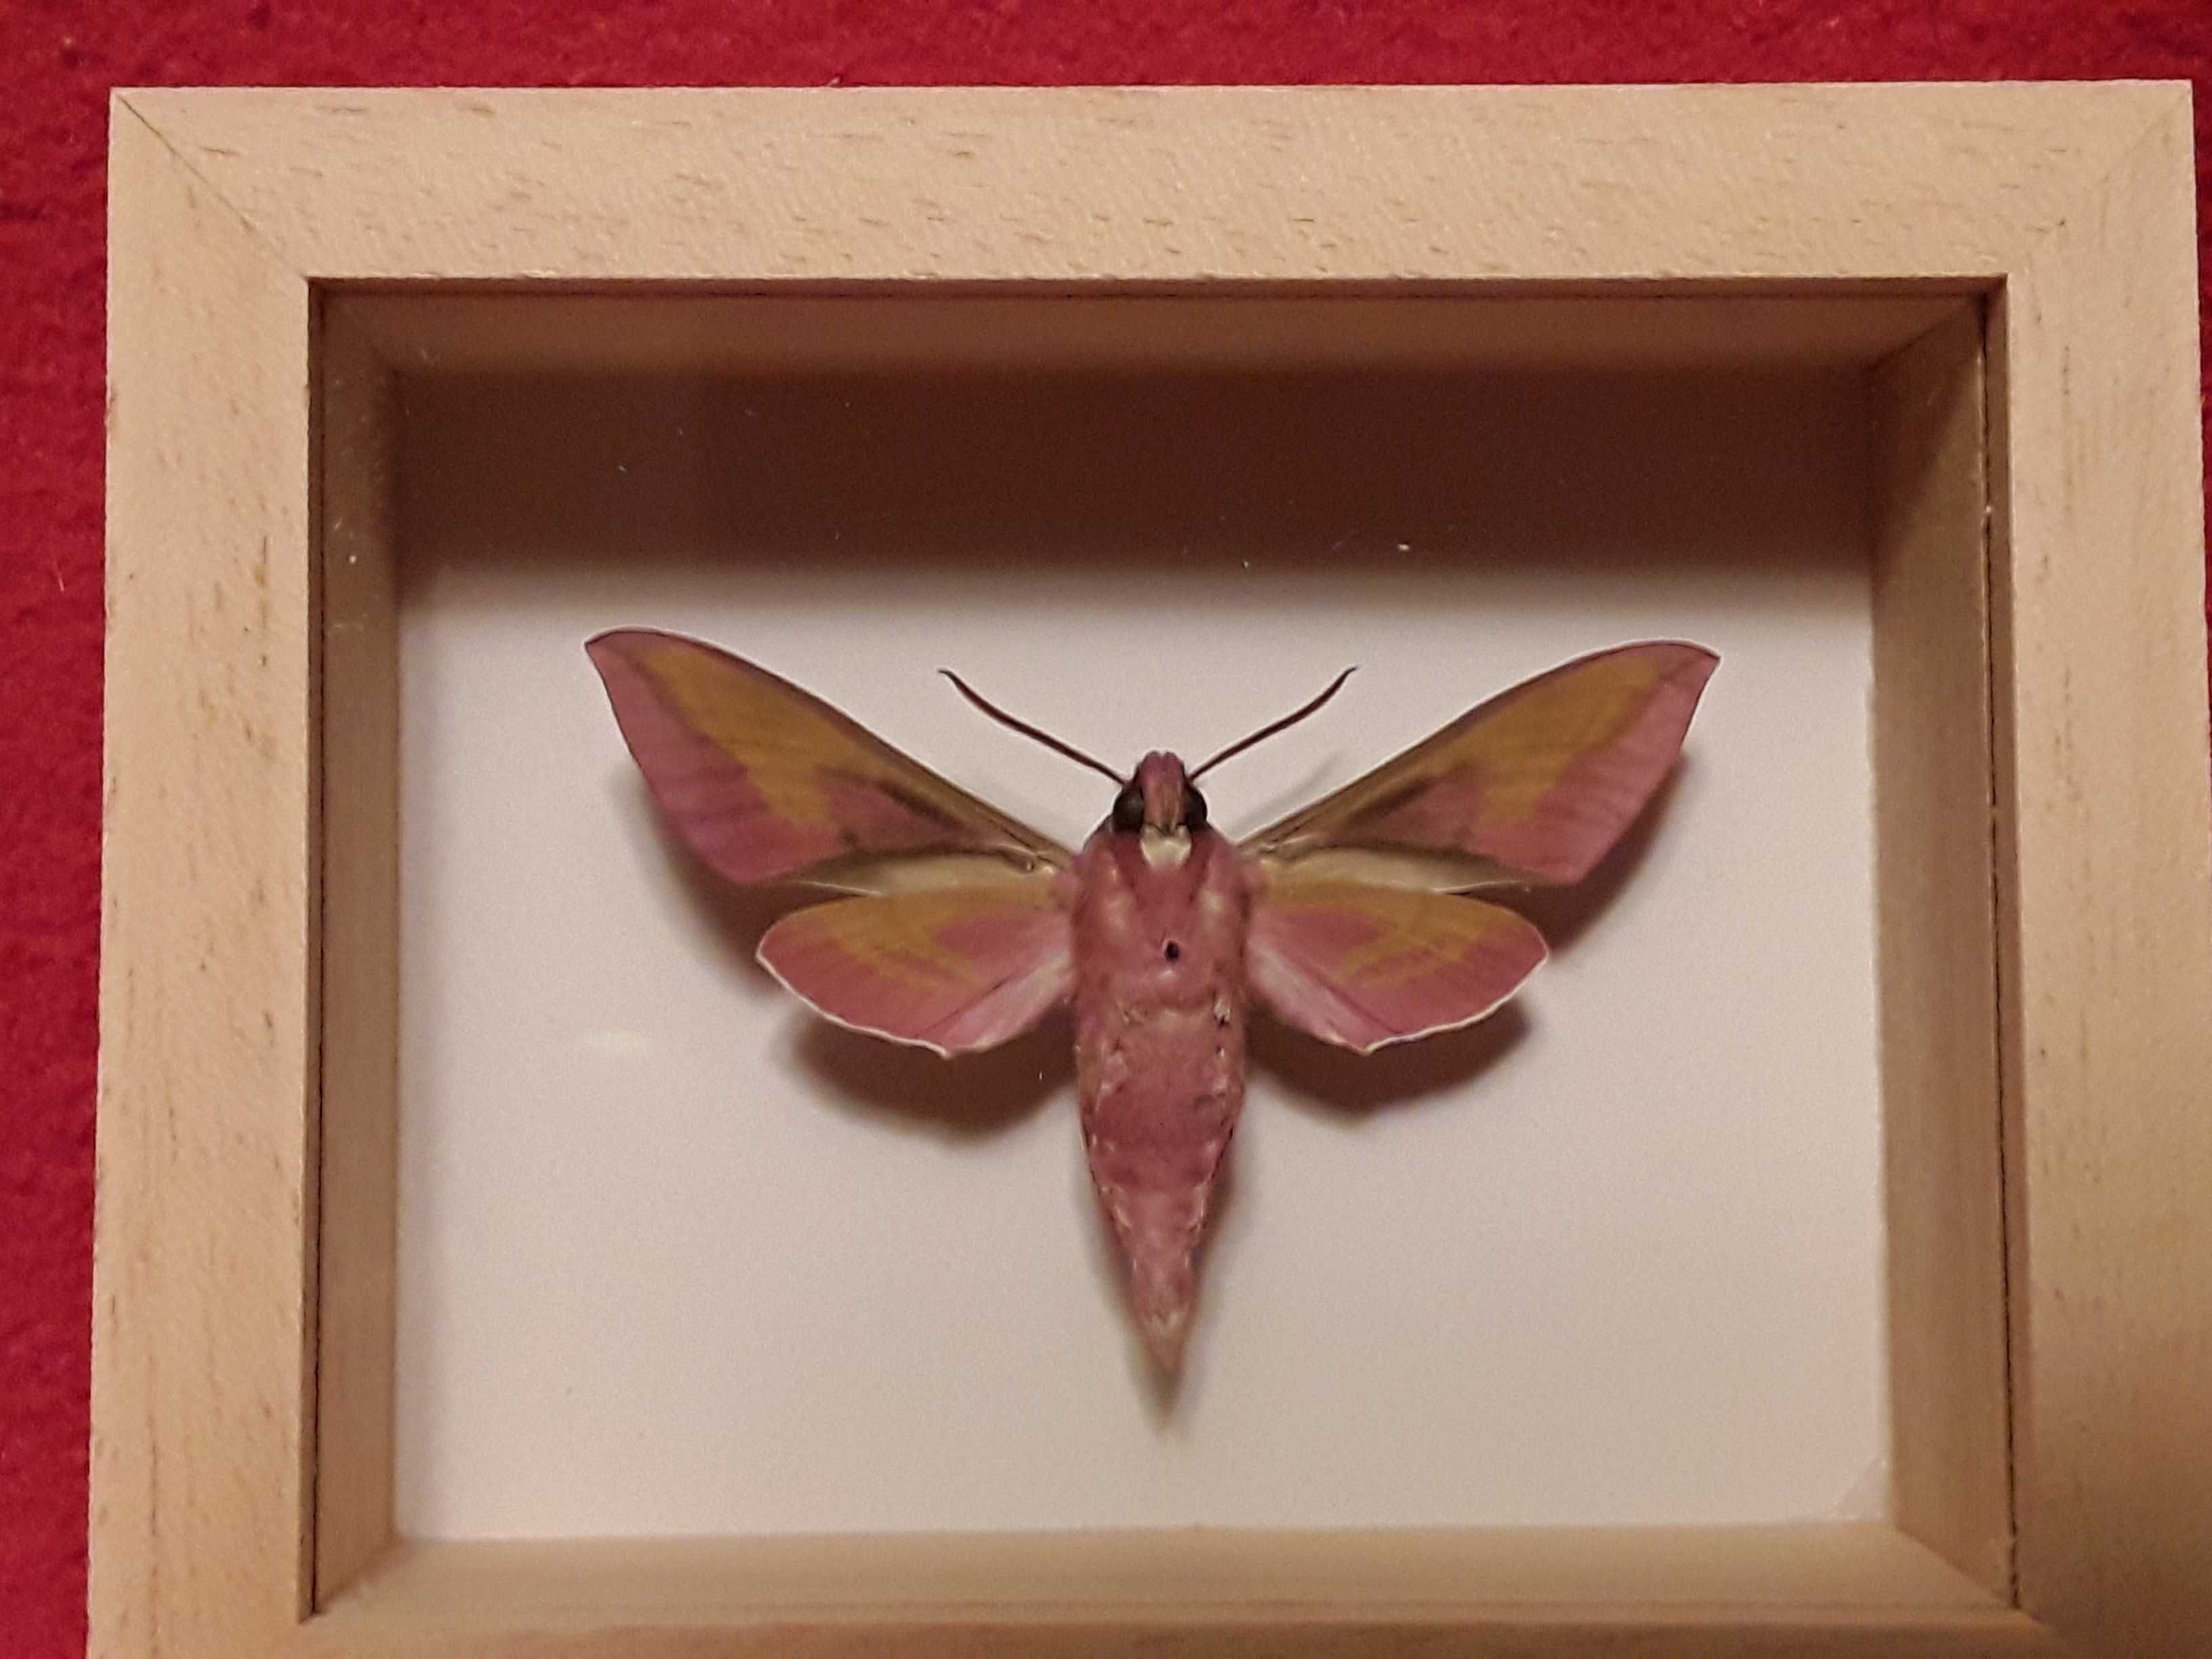 Motyl w ramce 10 x 8 cm . Deilephila elpenor - Zmrocznik gładysz .